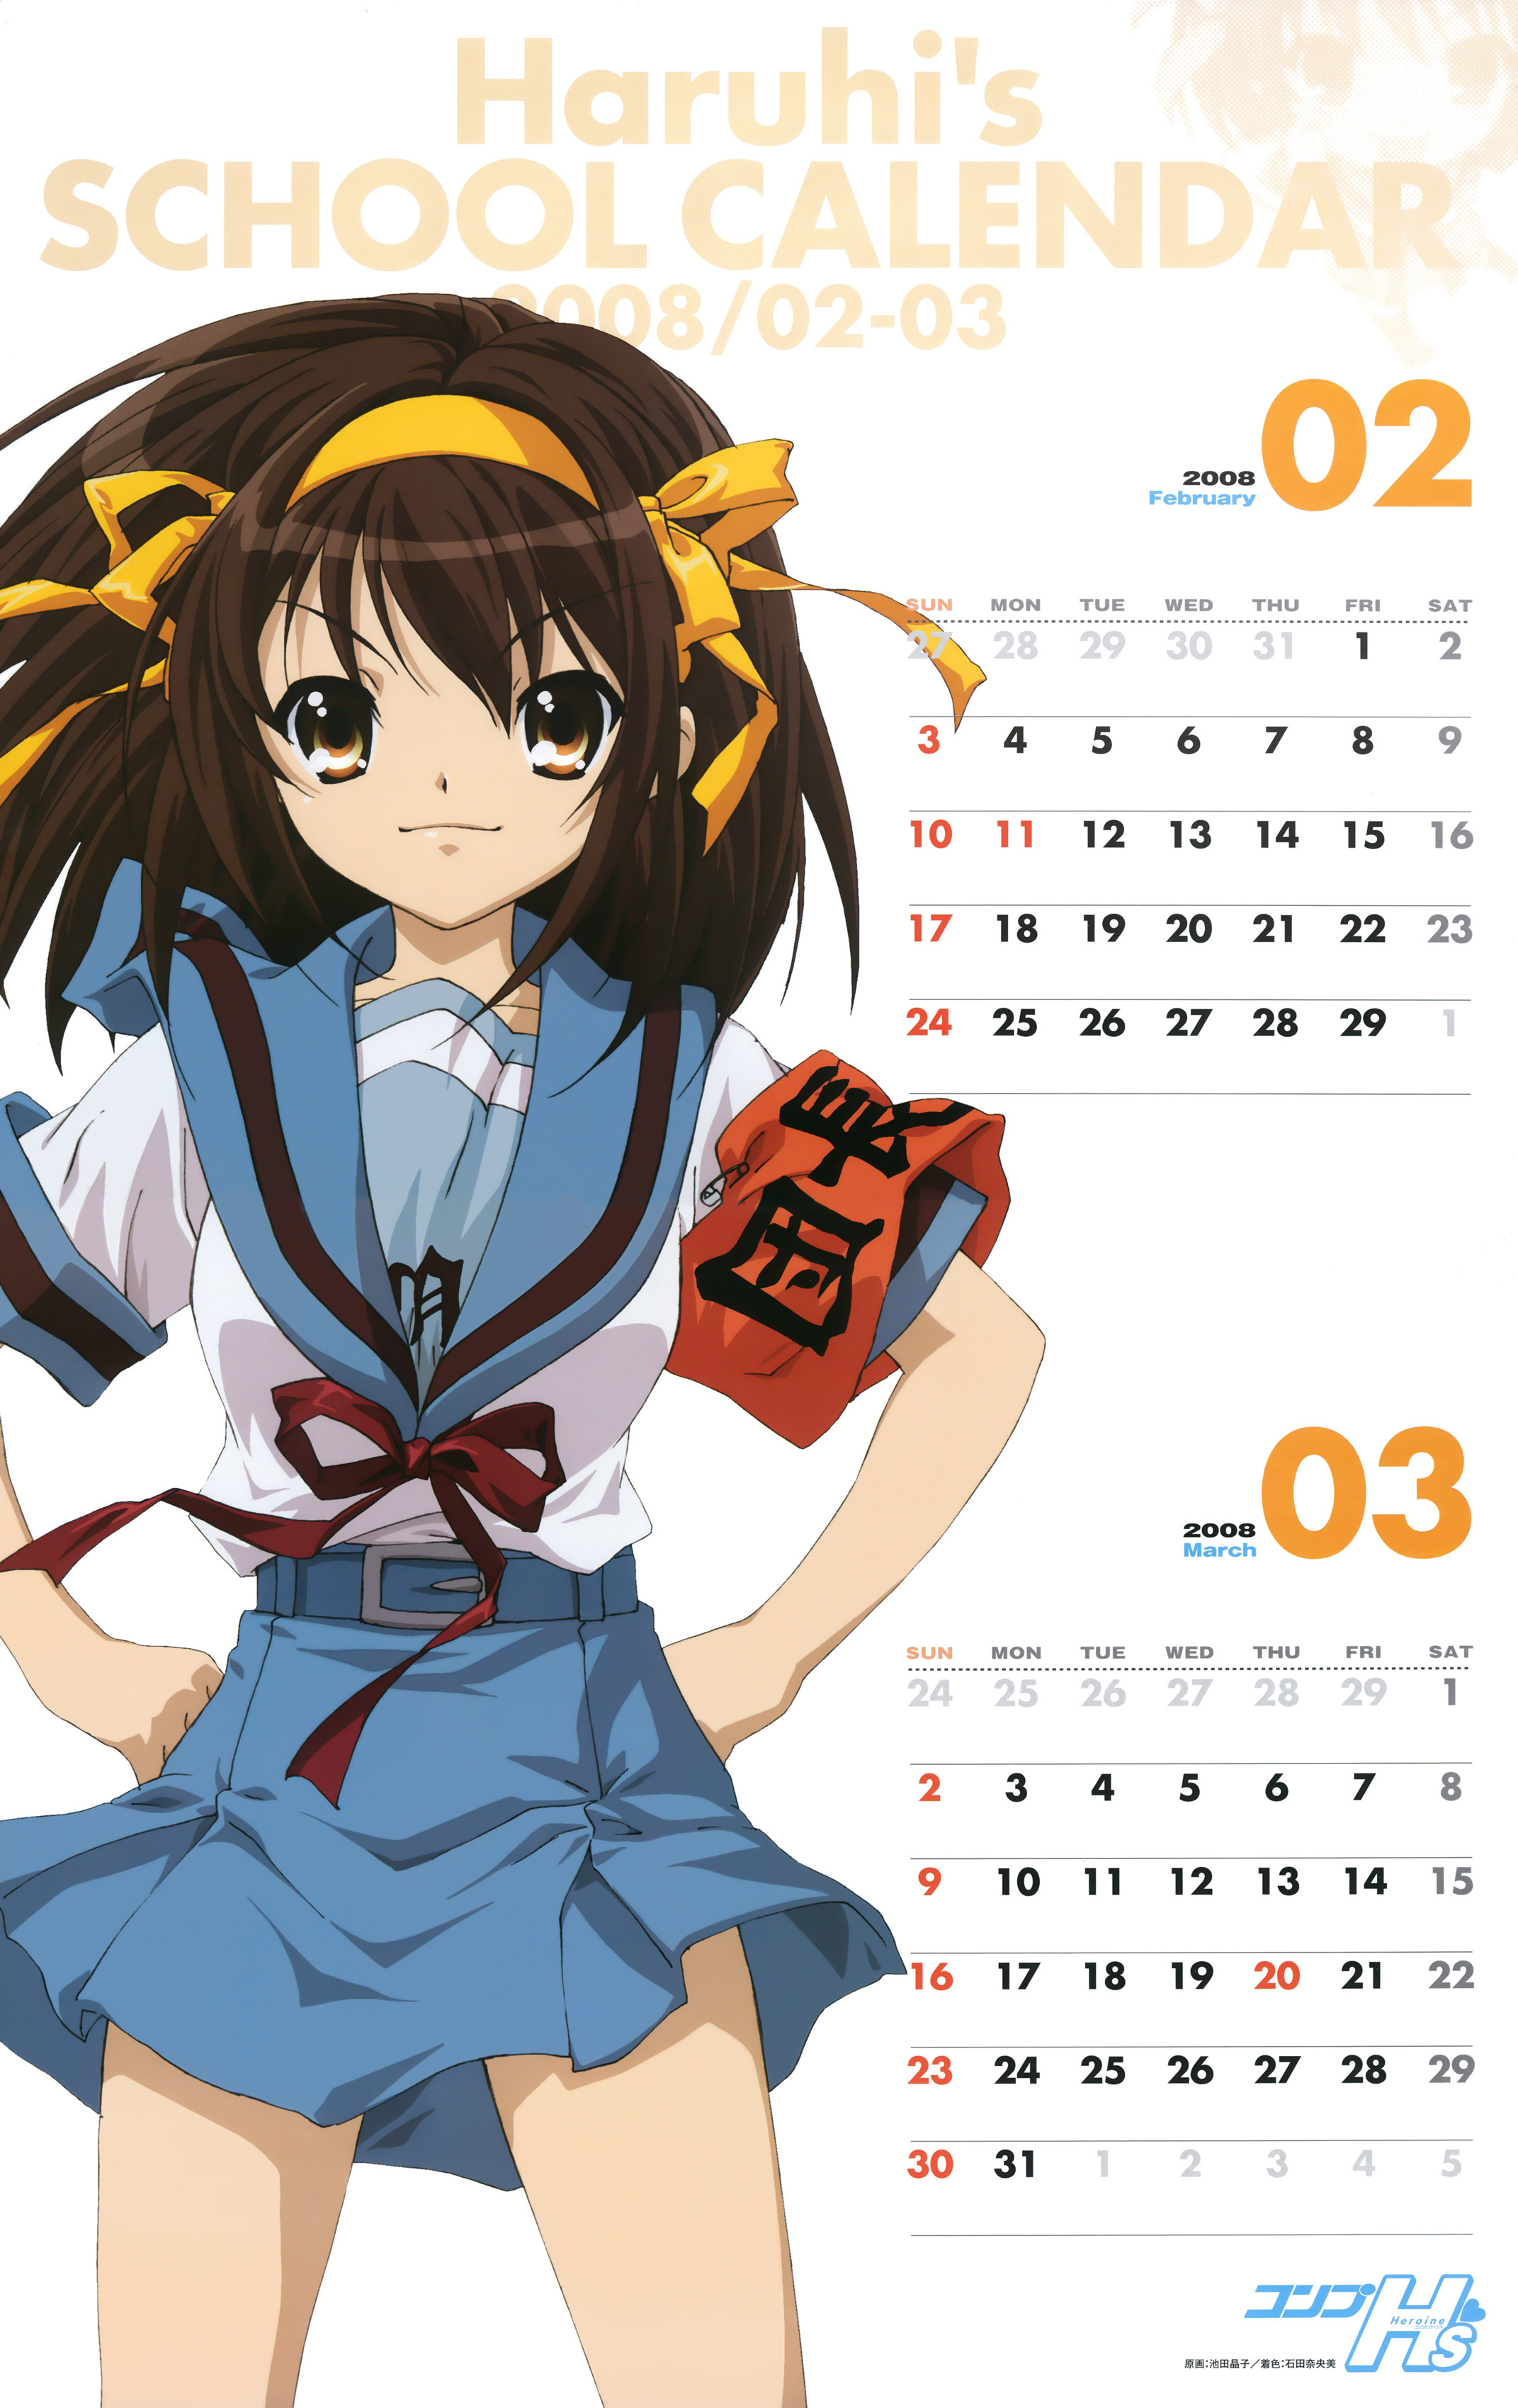 Calendario de Suzumiya Haruhi no Yuutsu, School Calendar, 2007-2008 en Altsima Calidad